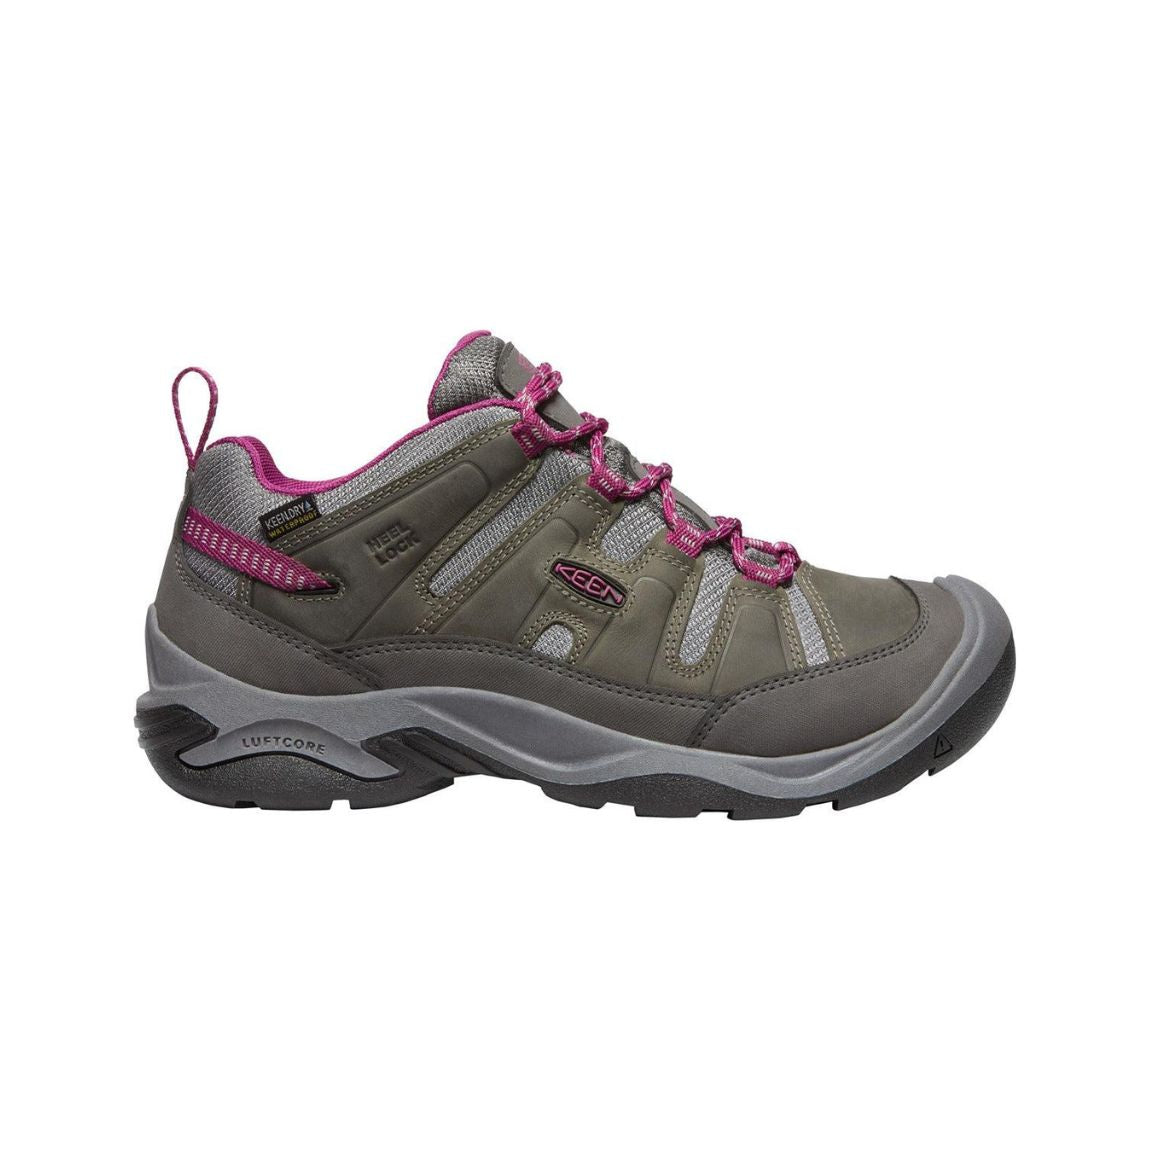 Keen Circadia Waterproof Hiking Shoe - Women